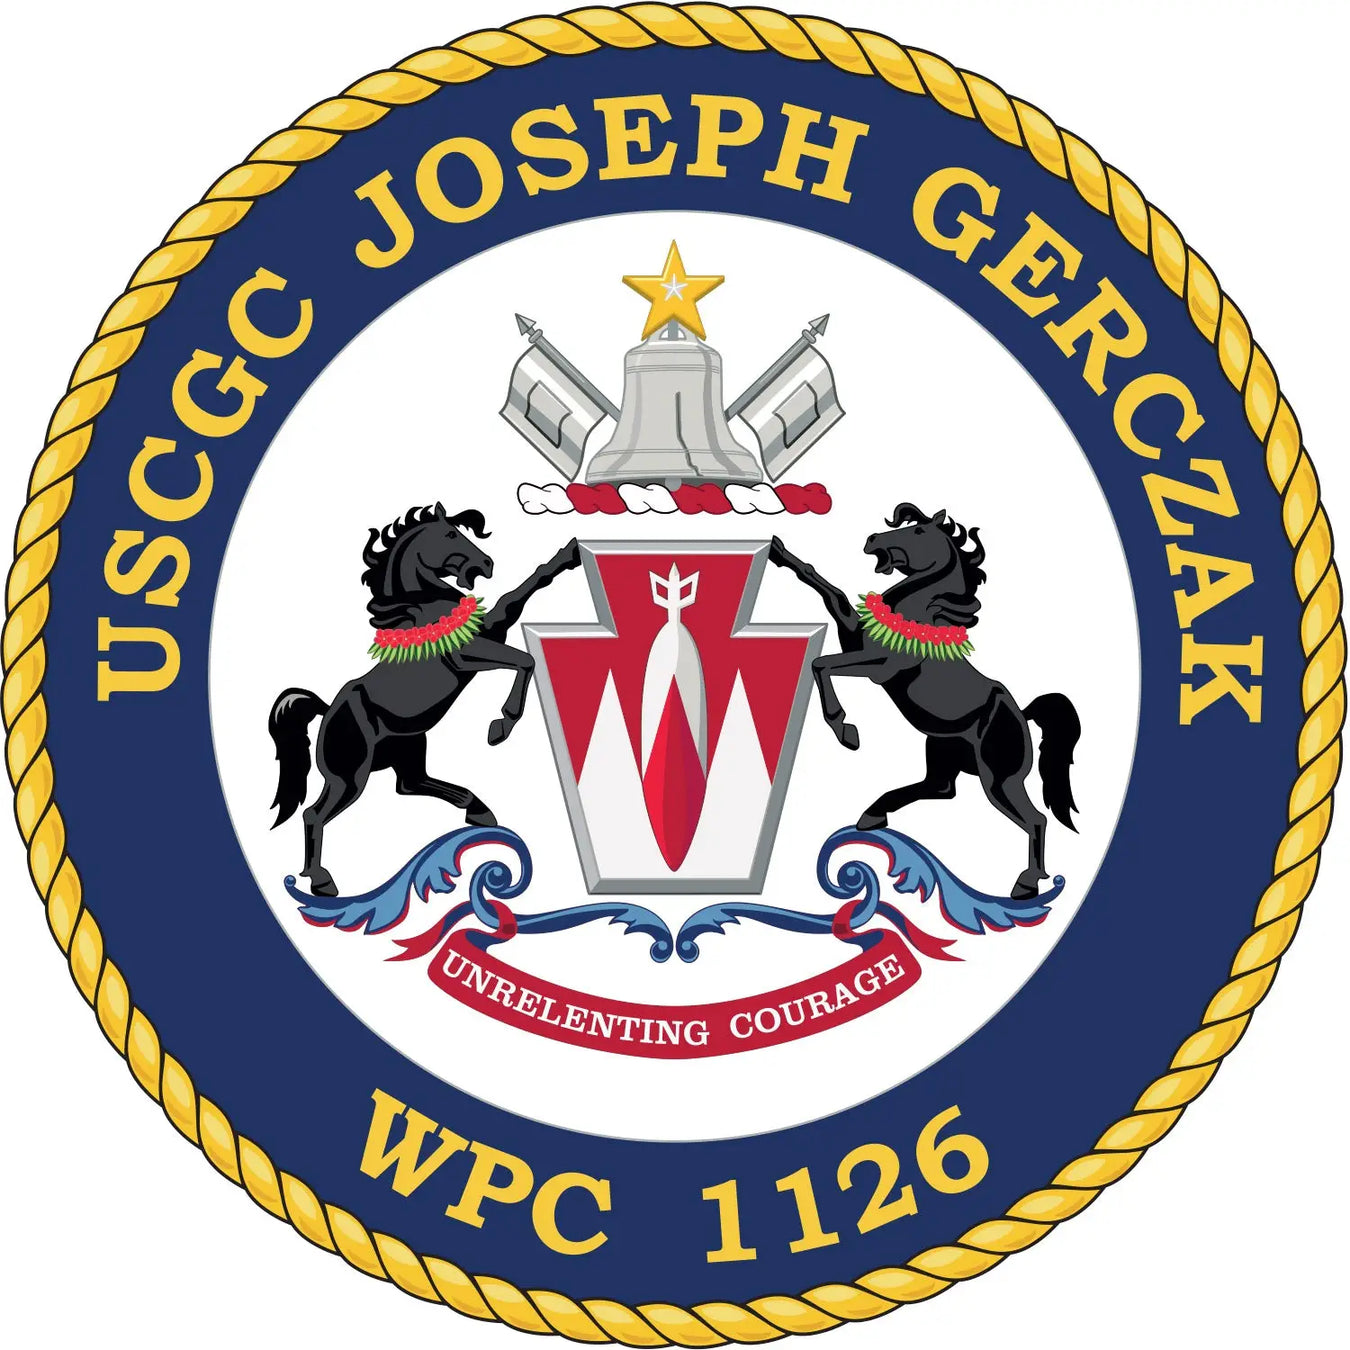 USCGC Joseph Gerczak (WPC-1126)